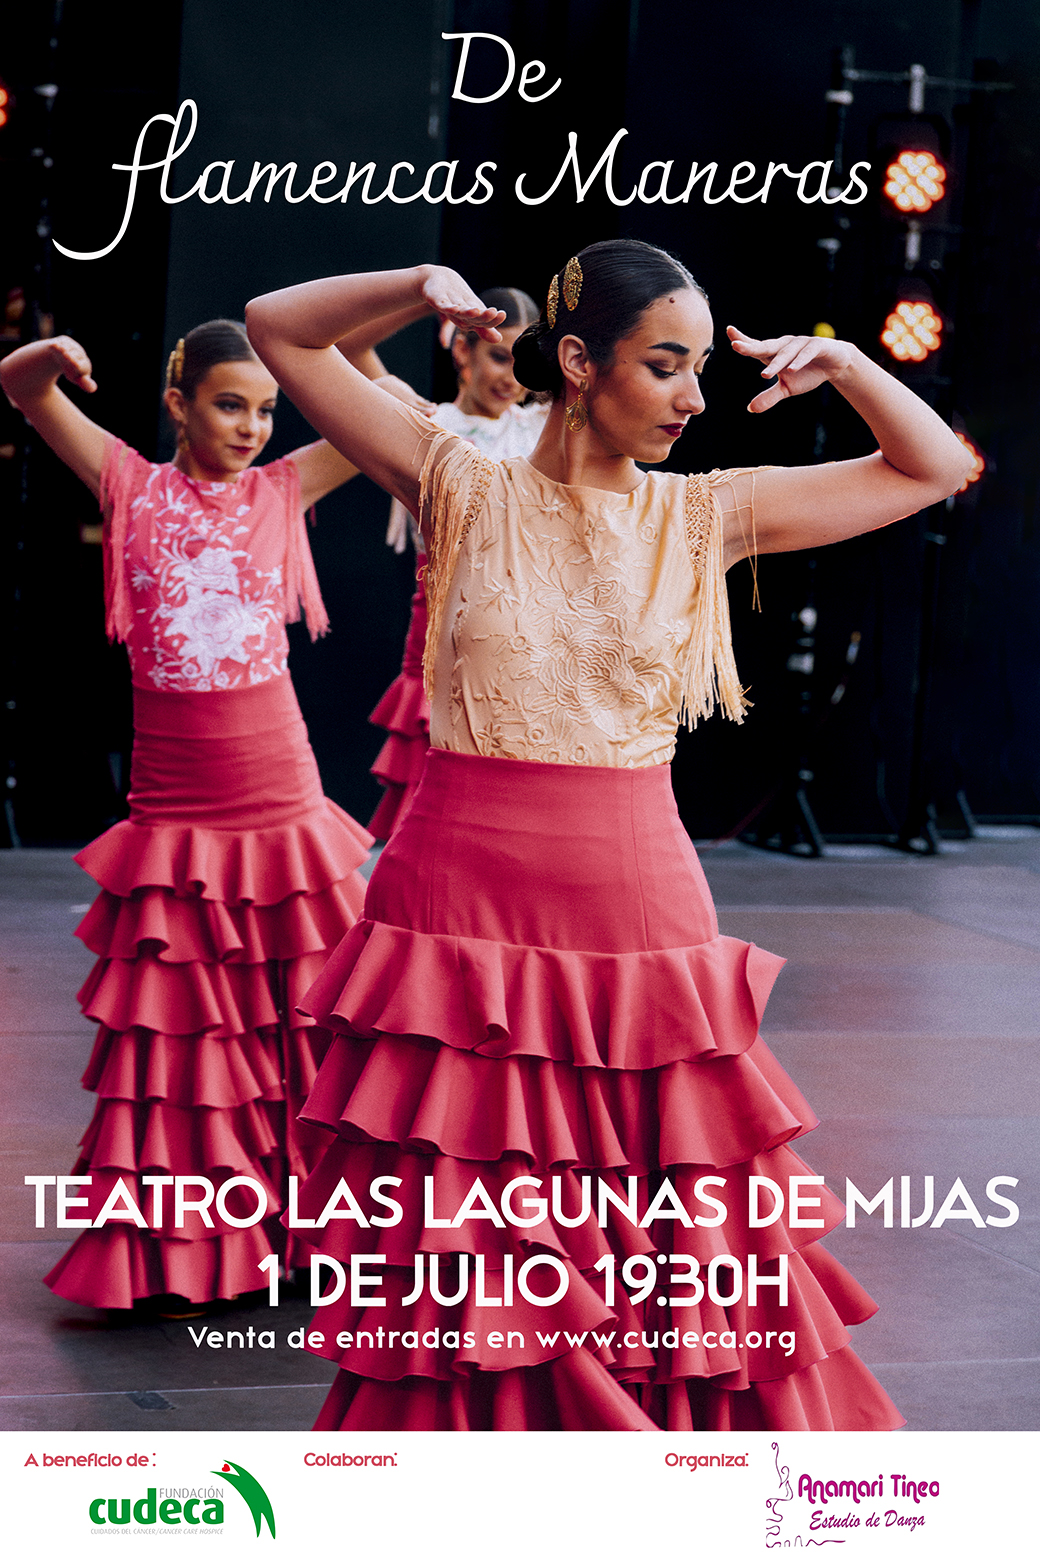 De Flamencas Maneras (Flamenco Ways)